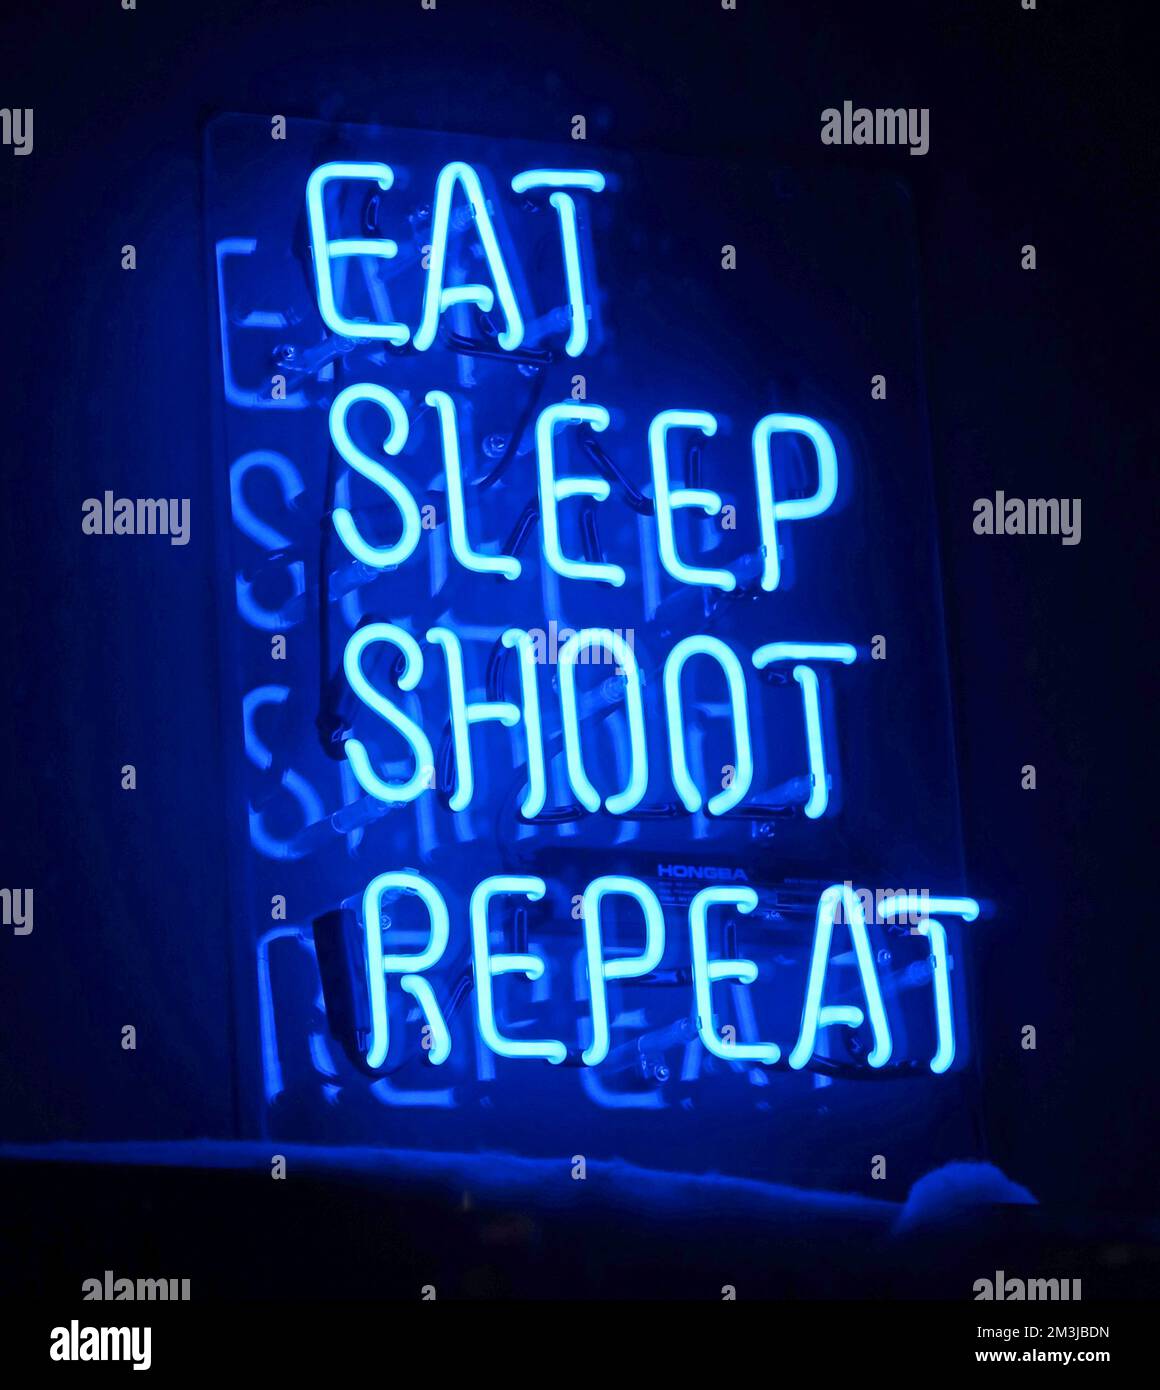 Panneau néon bleu, manger, dormir, tirer, répéter Banque D'Images